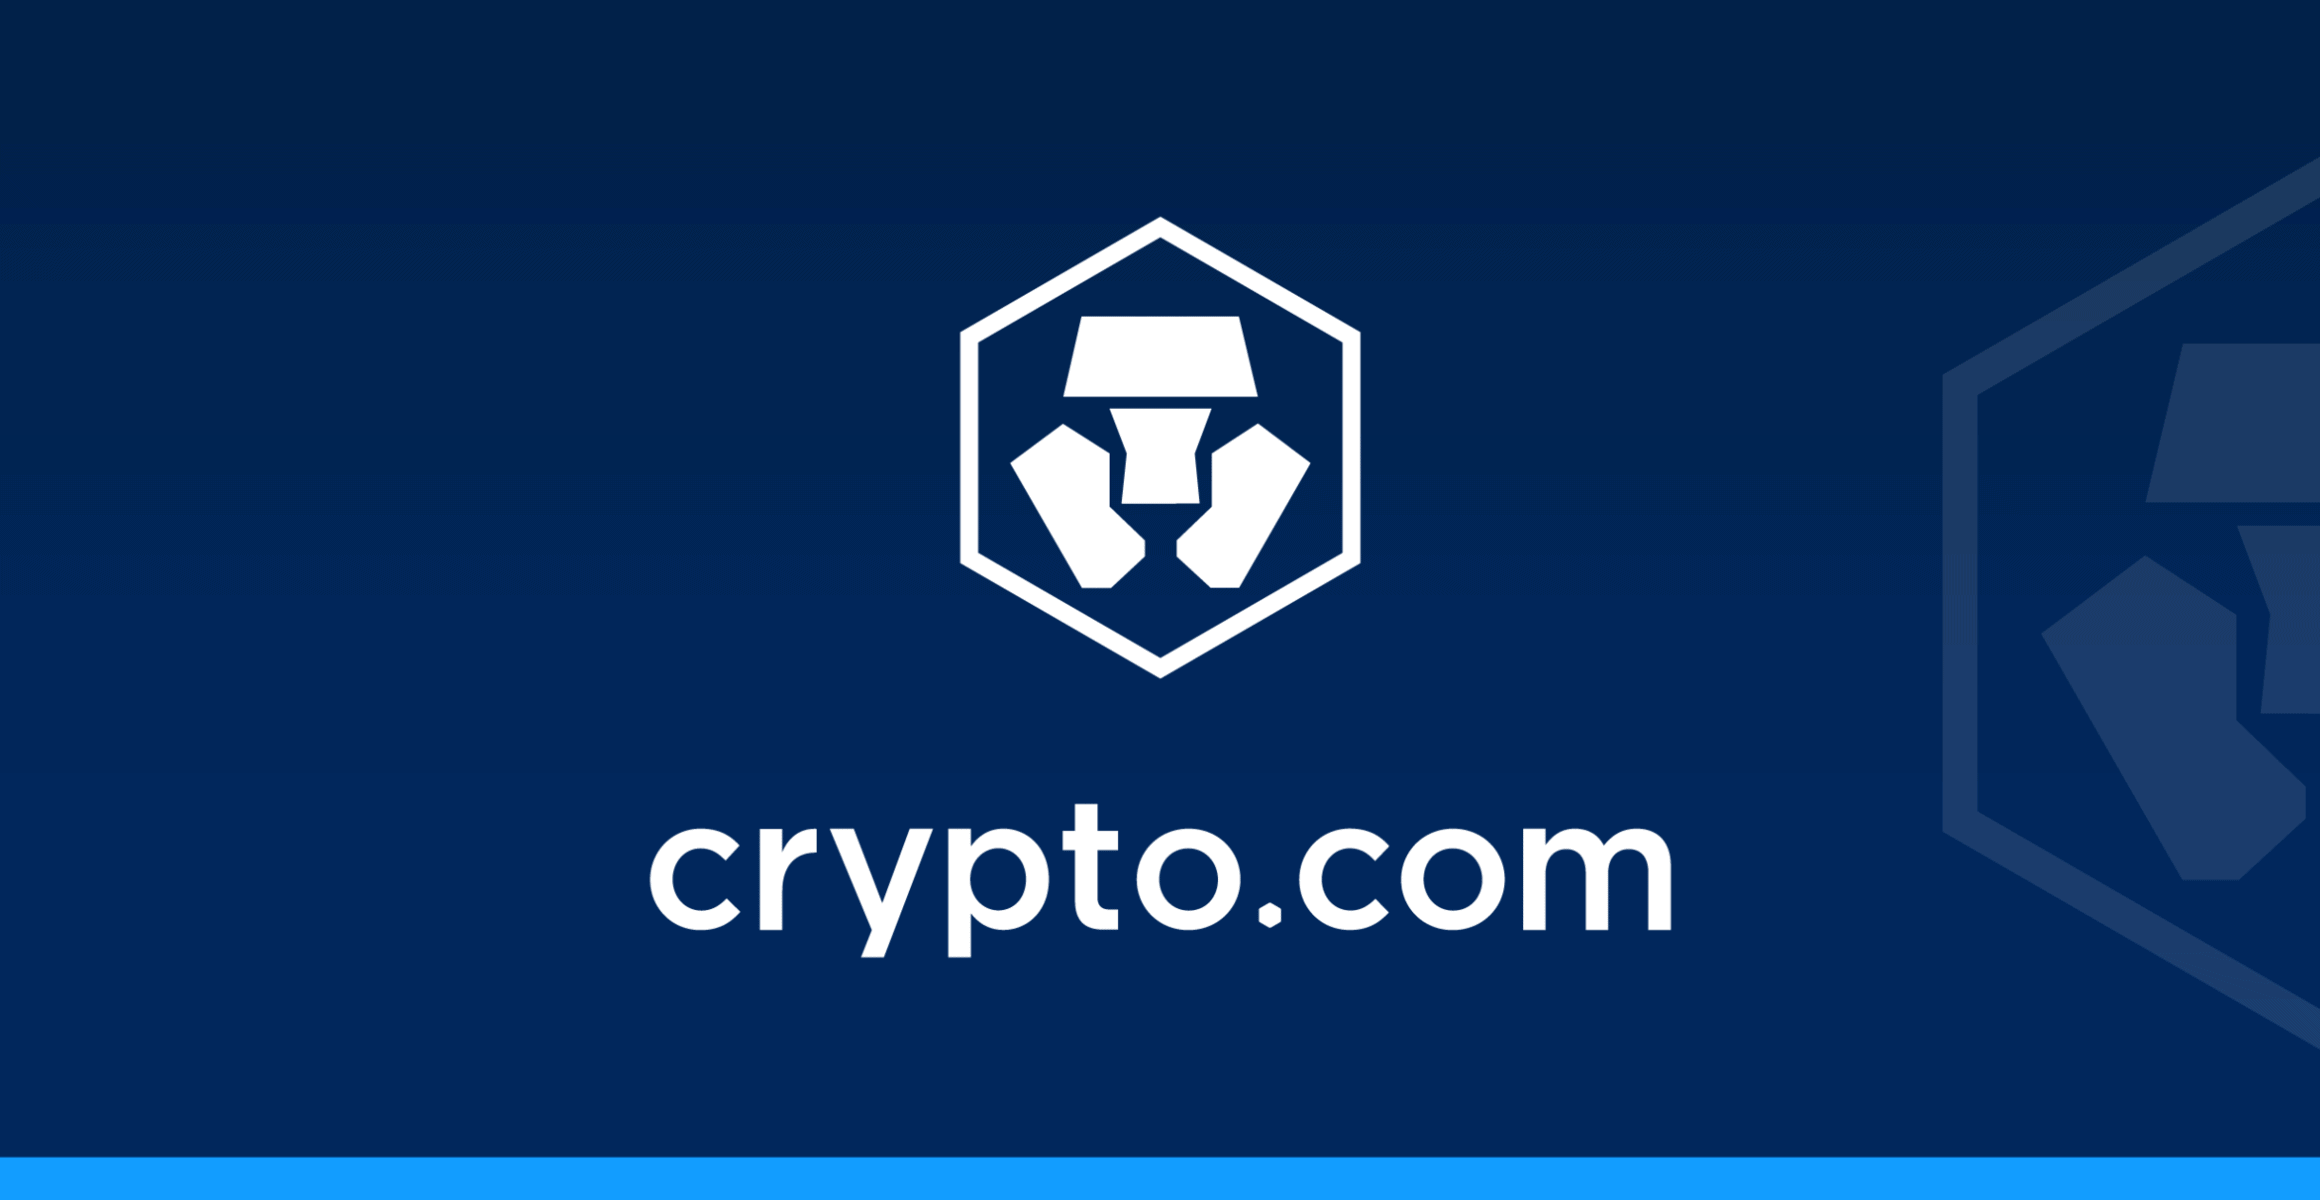 Столкнувшись с недовольством пользователей, Crypto.com склоняет спину